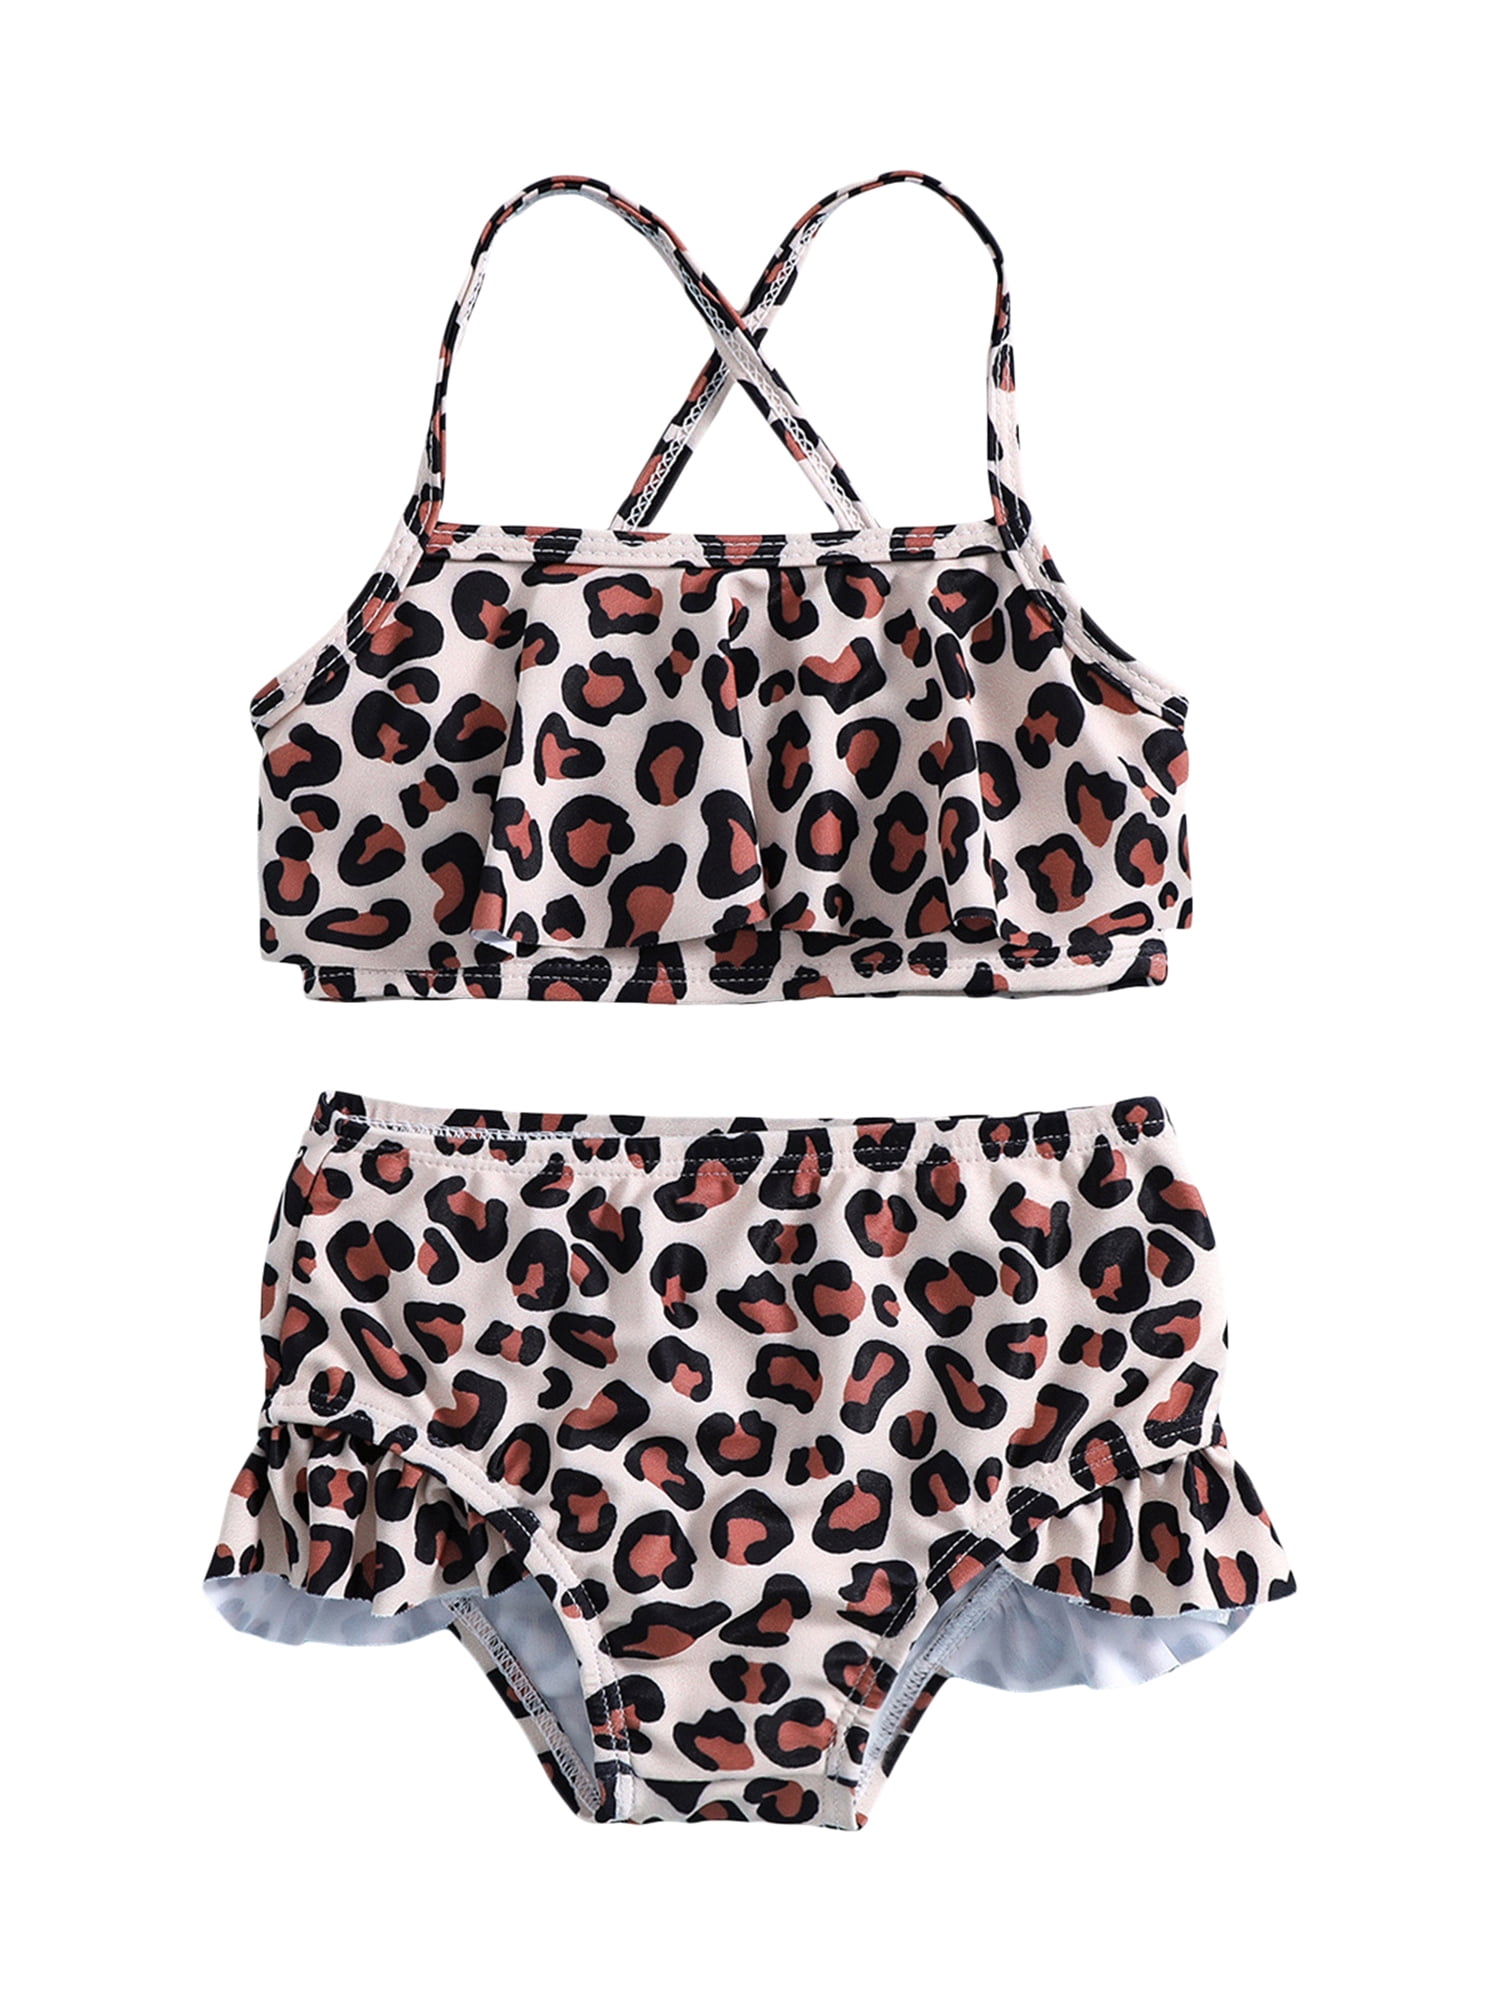 mengsel Derde Hoe dan ook Wassery Kids Little Girl's 2Pcs Swimsuits Summer Leopard Print Sleeveless  Camisole with Ruffled Beach Shorts Swimwear Bikini Bathing Suit Set 18M-6T  - Walmart.com